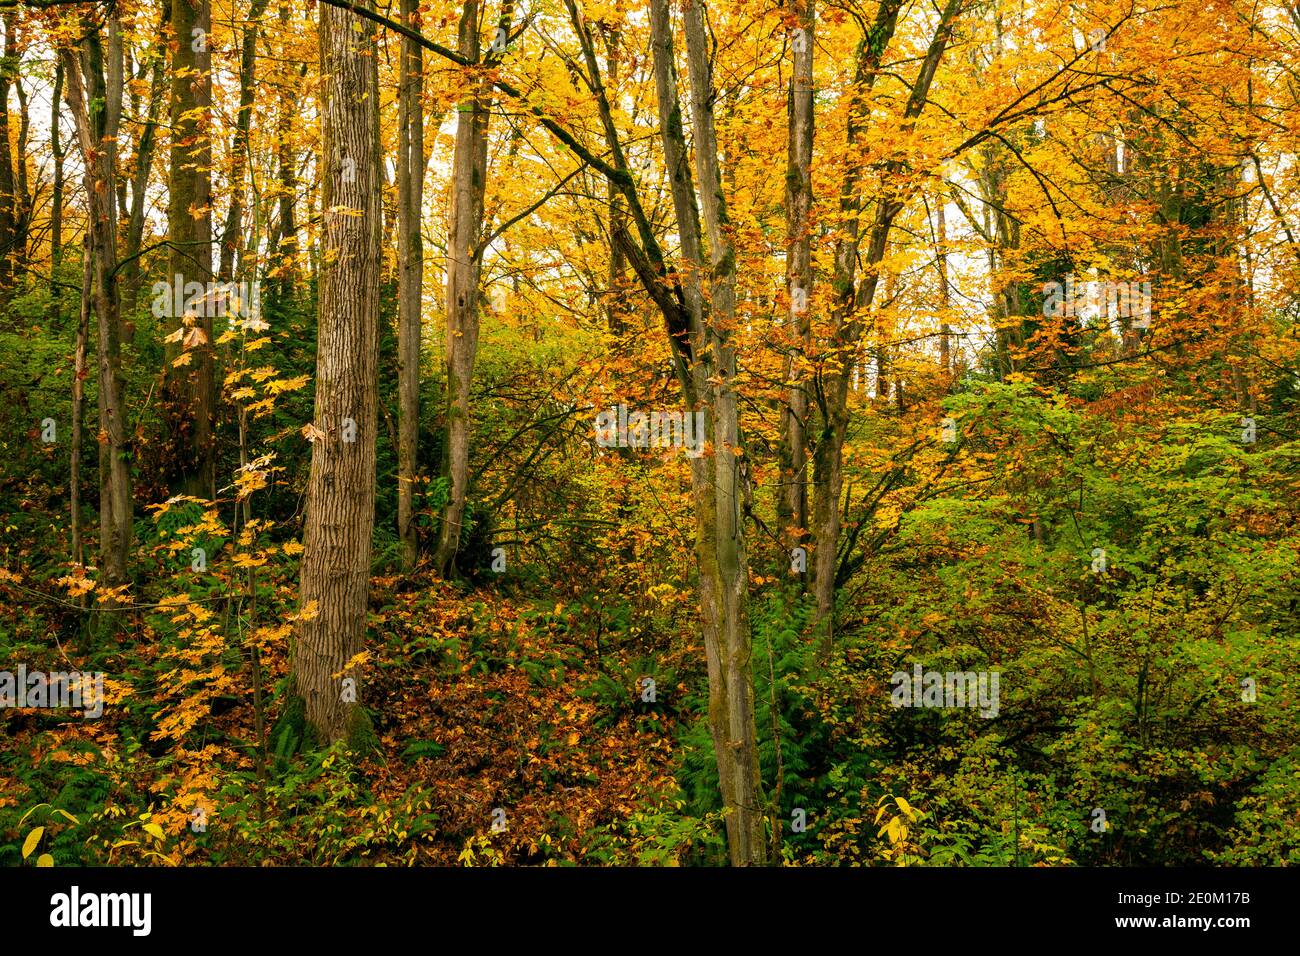 WA18971-00...WASHINGTON - Big Leaf Maple Trees in colori autunnali vibranti nella zona naturale del parco Kubota Gardens di Seattle. Foto Stock